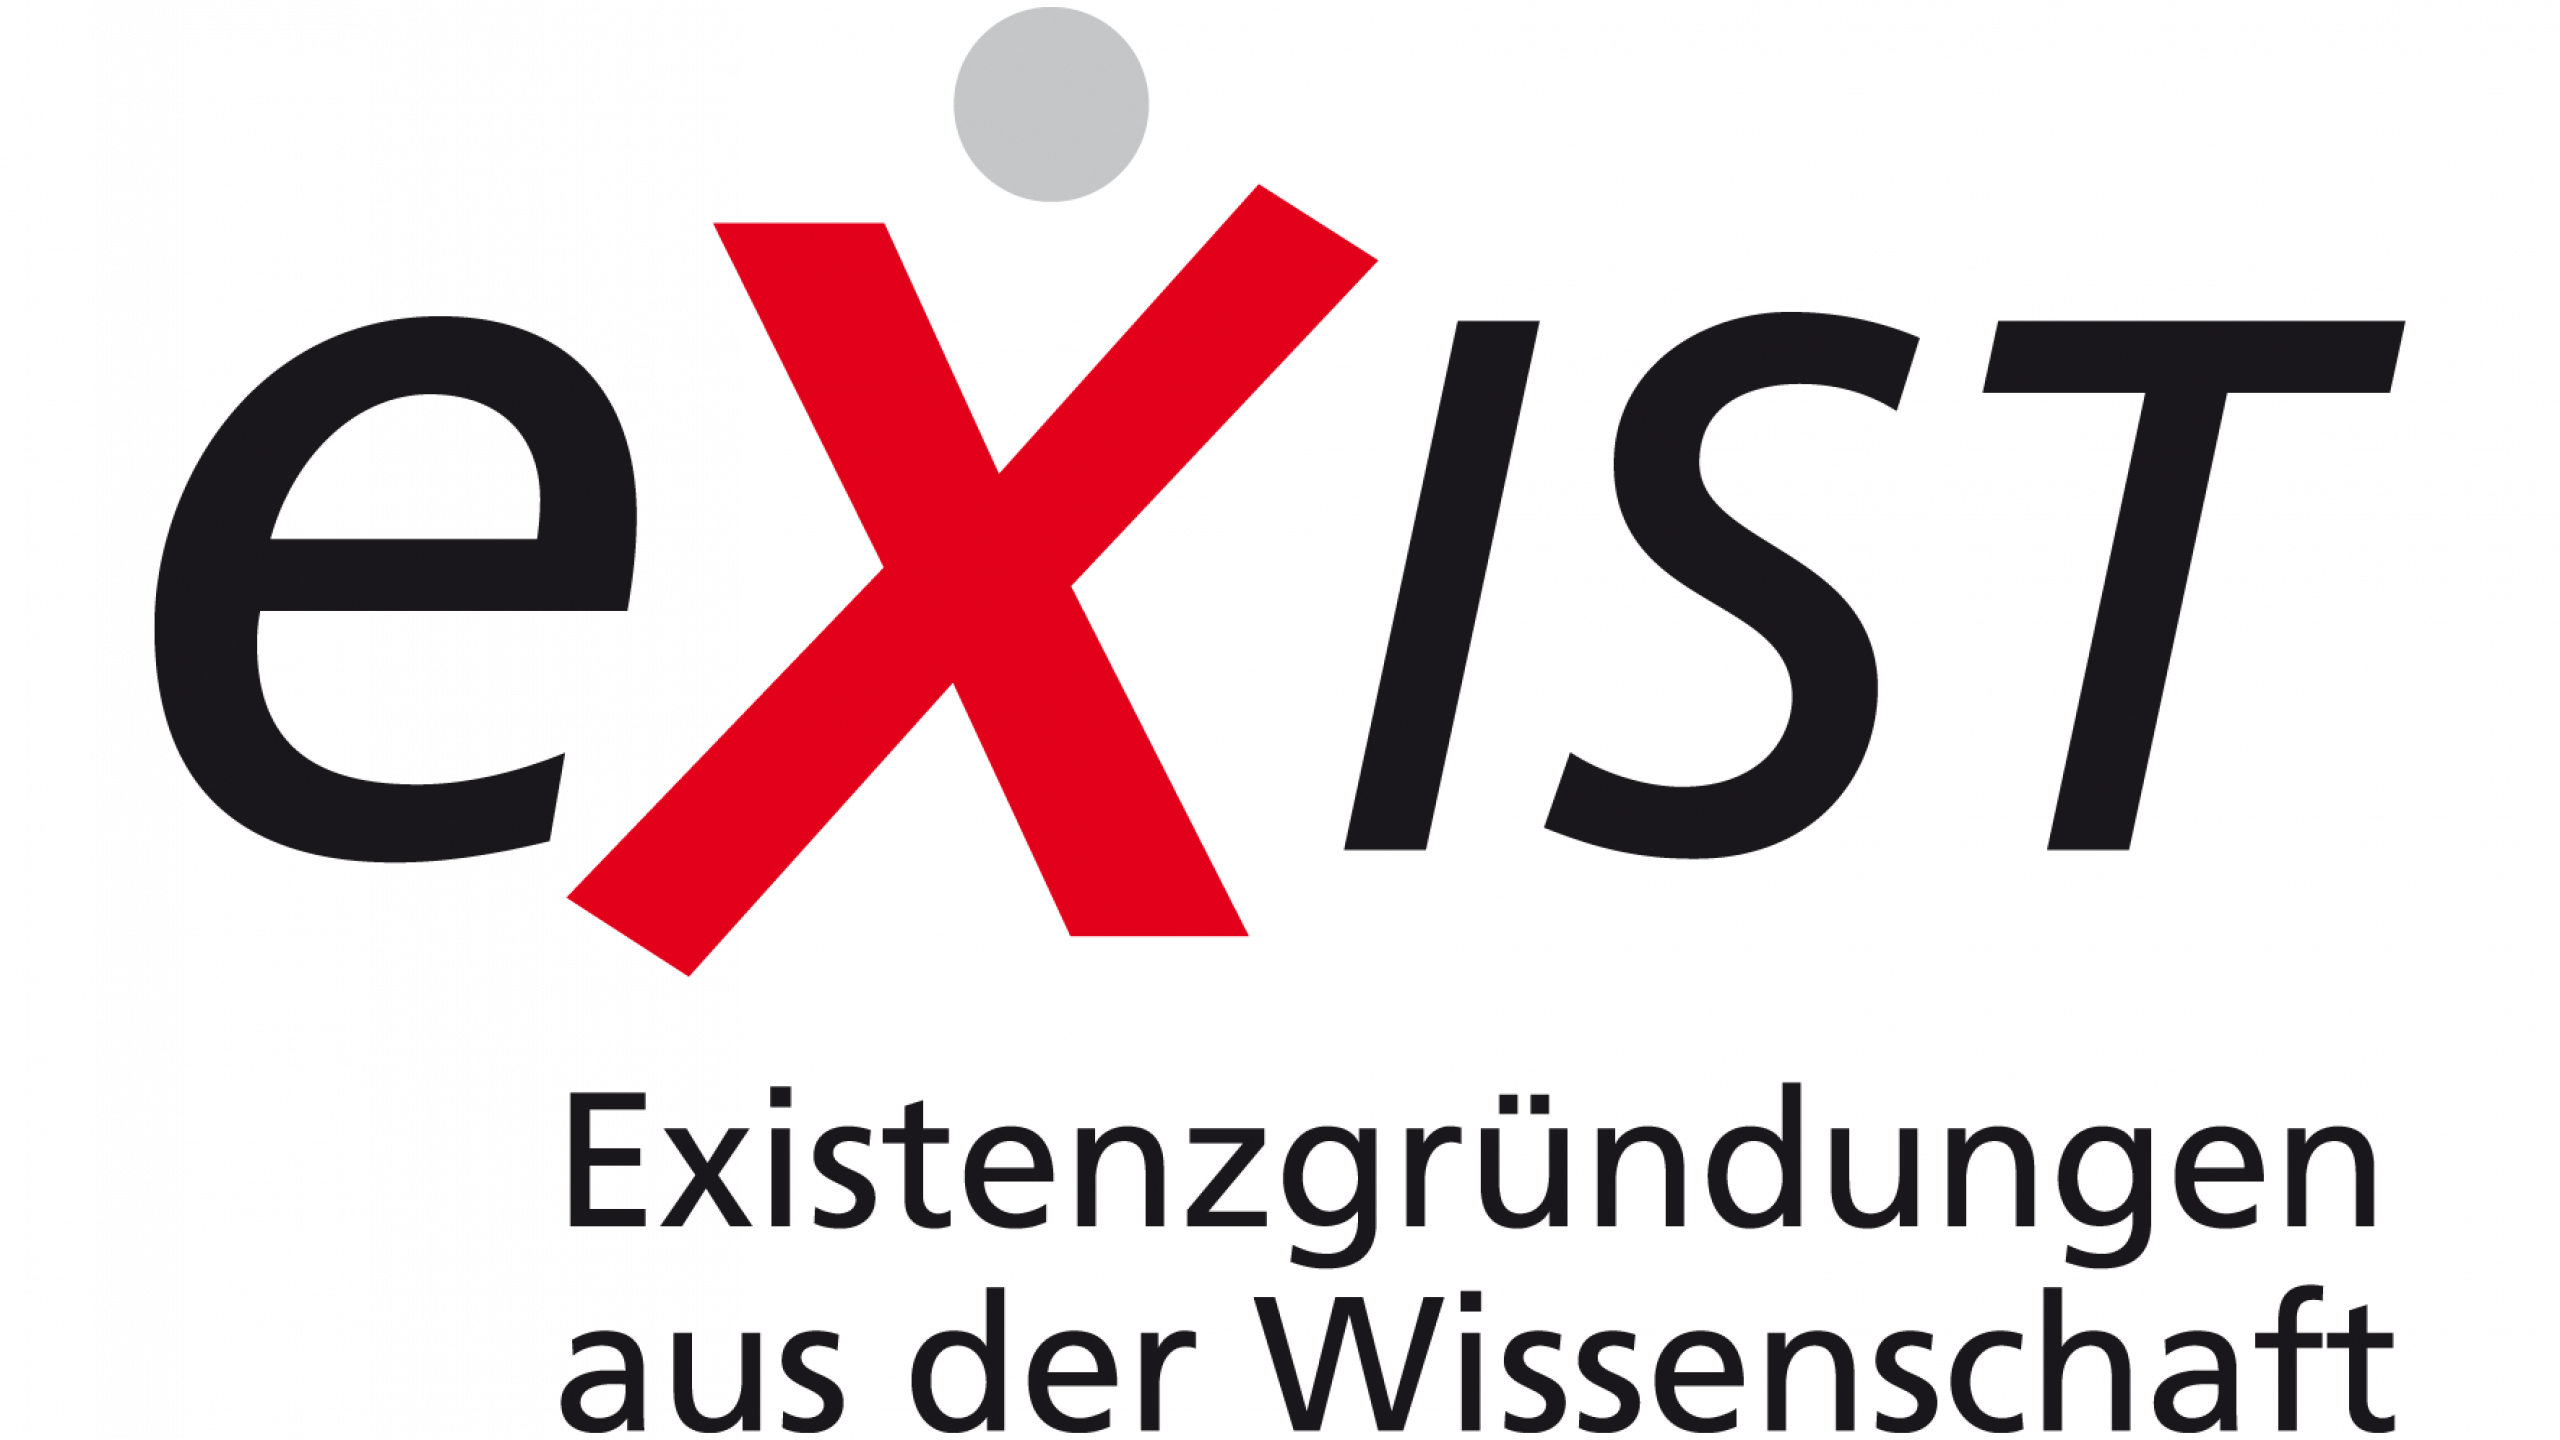 EXIST-Gründerstipendium